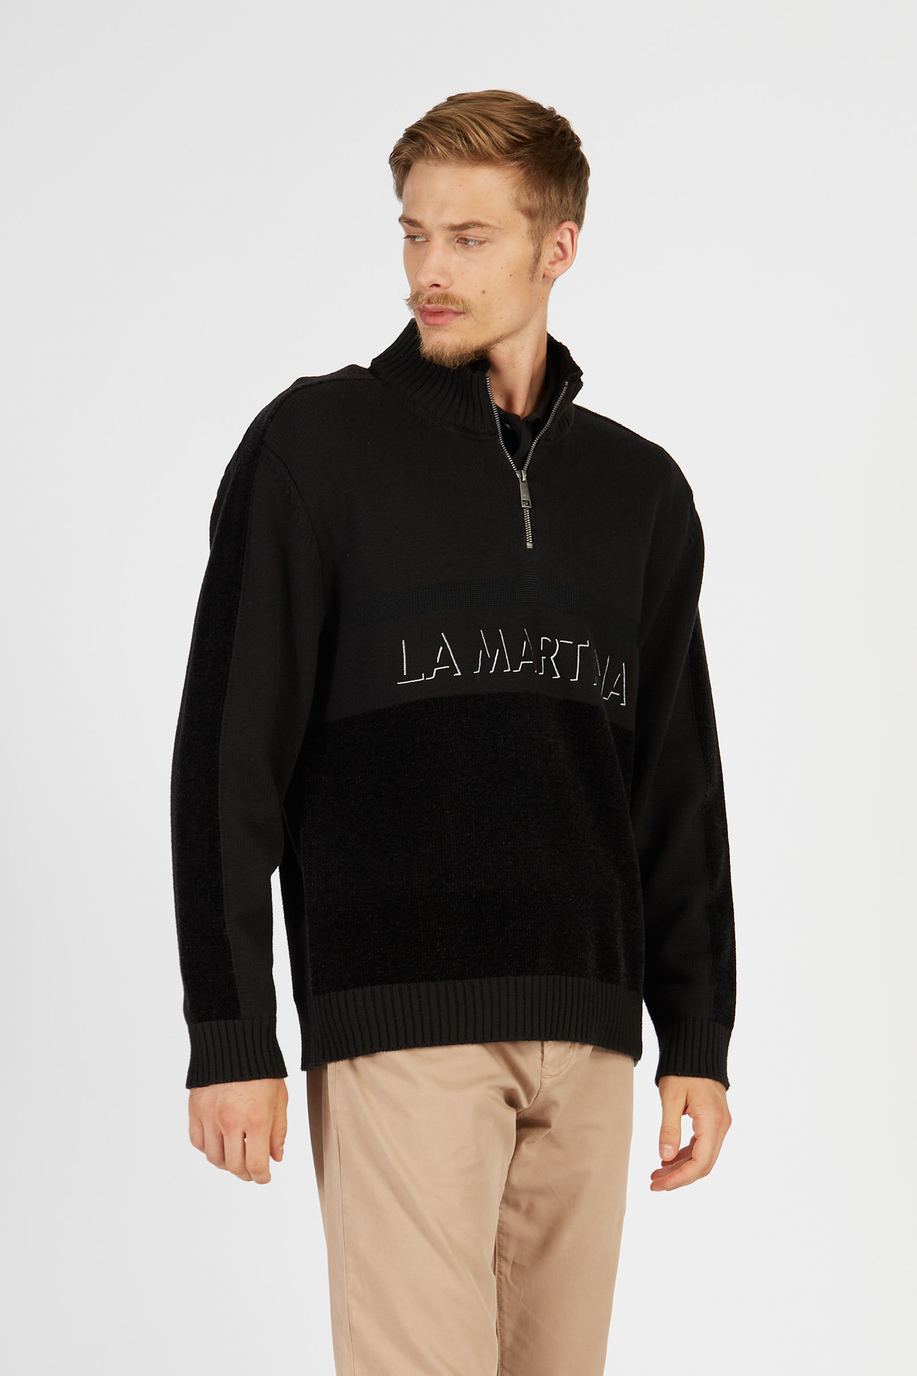 Maglia tricot da uomo a maniche lunghe in cotone misto lana comfort fit - Jet Set | La Martina - Official Online Shop